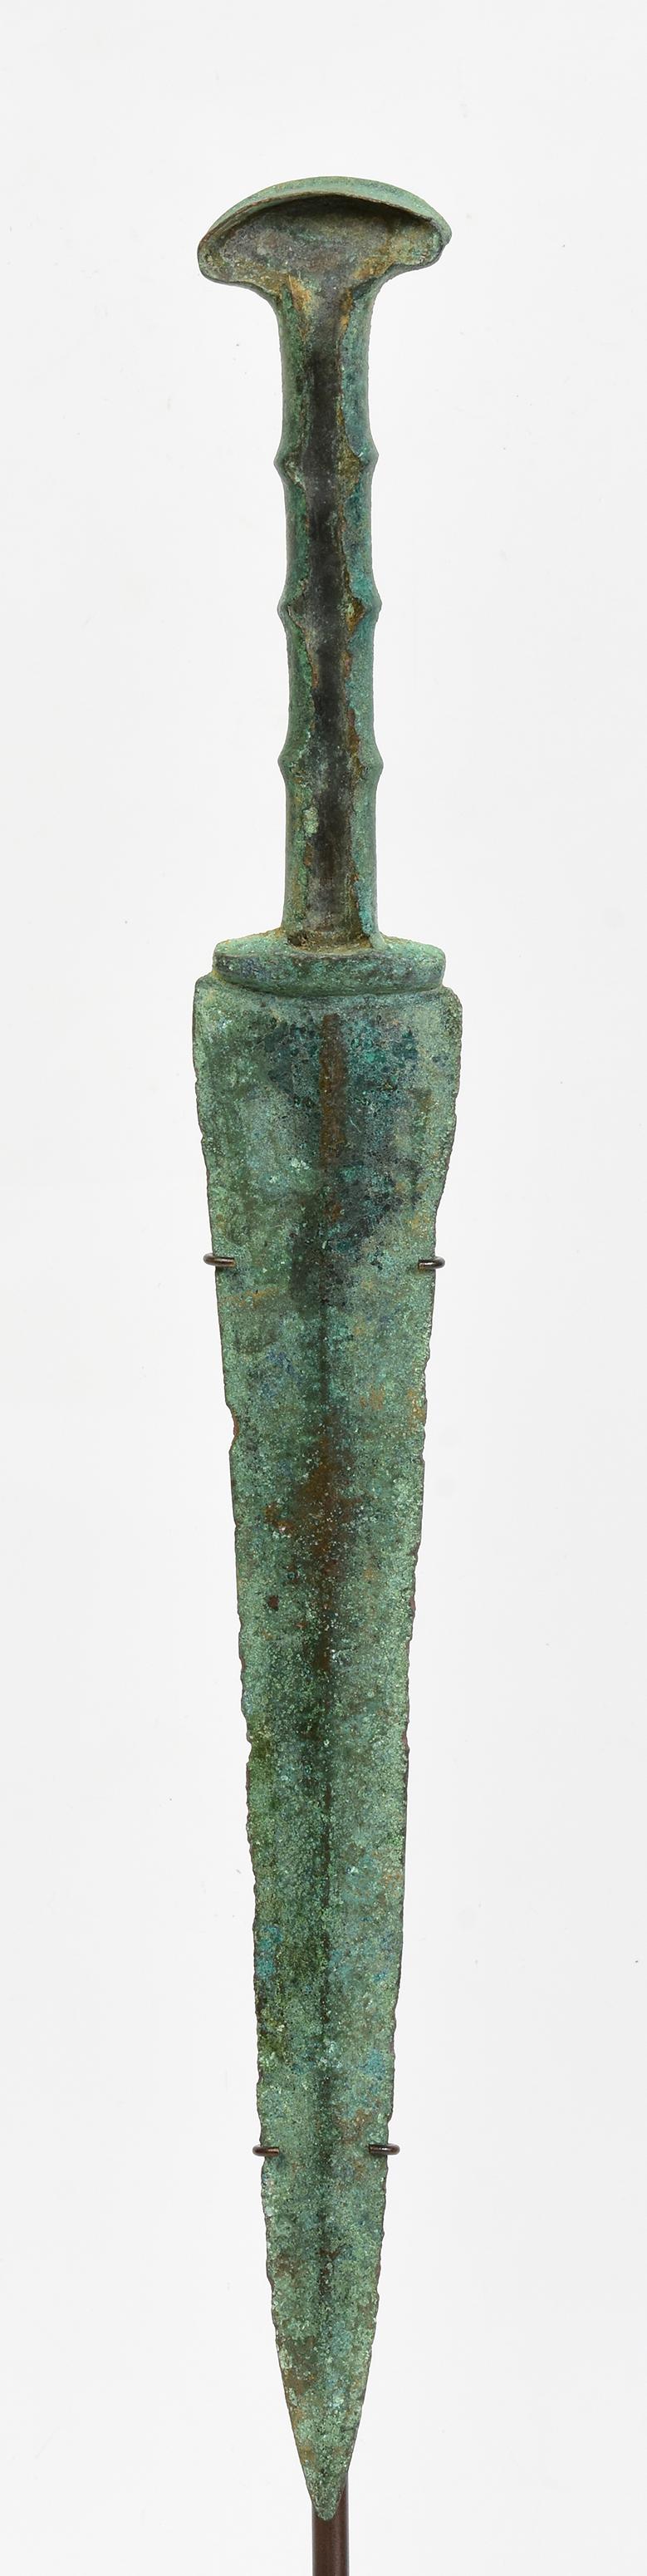 Ancienne épée courte en bronze du Luristan à patine verte.

Le bronze du Luristan provient de la province du Lorestan, une région de l'actuel Iran occidental située dans les monts Zagros. Riche d'une longue histoire, la culture du Luristan est